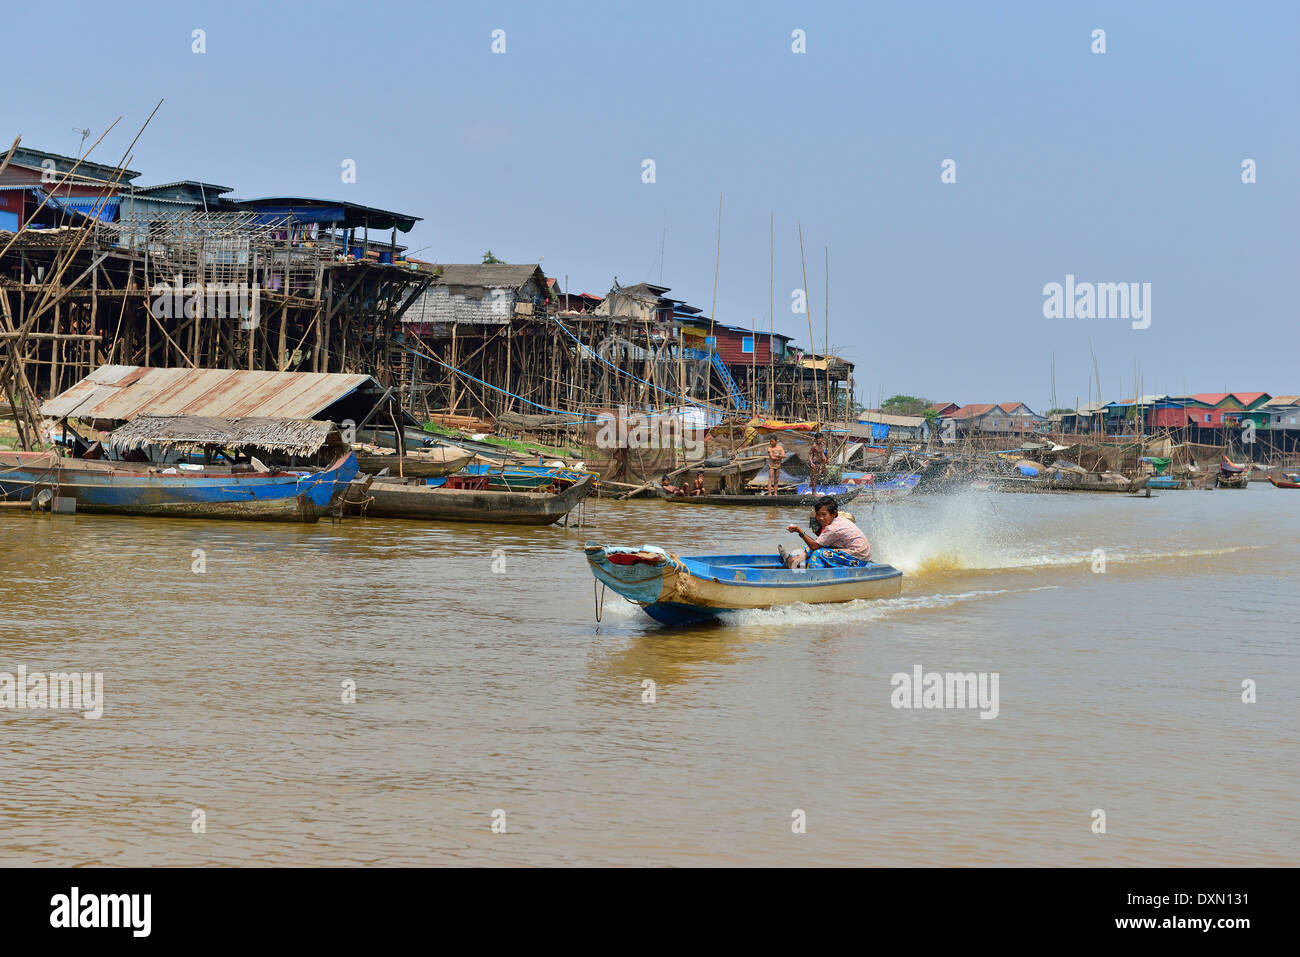 Bateau à grande vitesse à longue queue qui ferriait les produits le long de la rivière avec des maisons sur pilotis sur le rivage jusqu'au lac Tonle SAP, au Cambodge, en Asie du Sud-est Banque D'Images